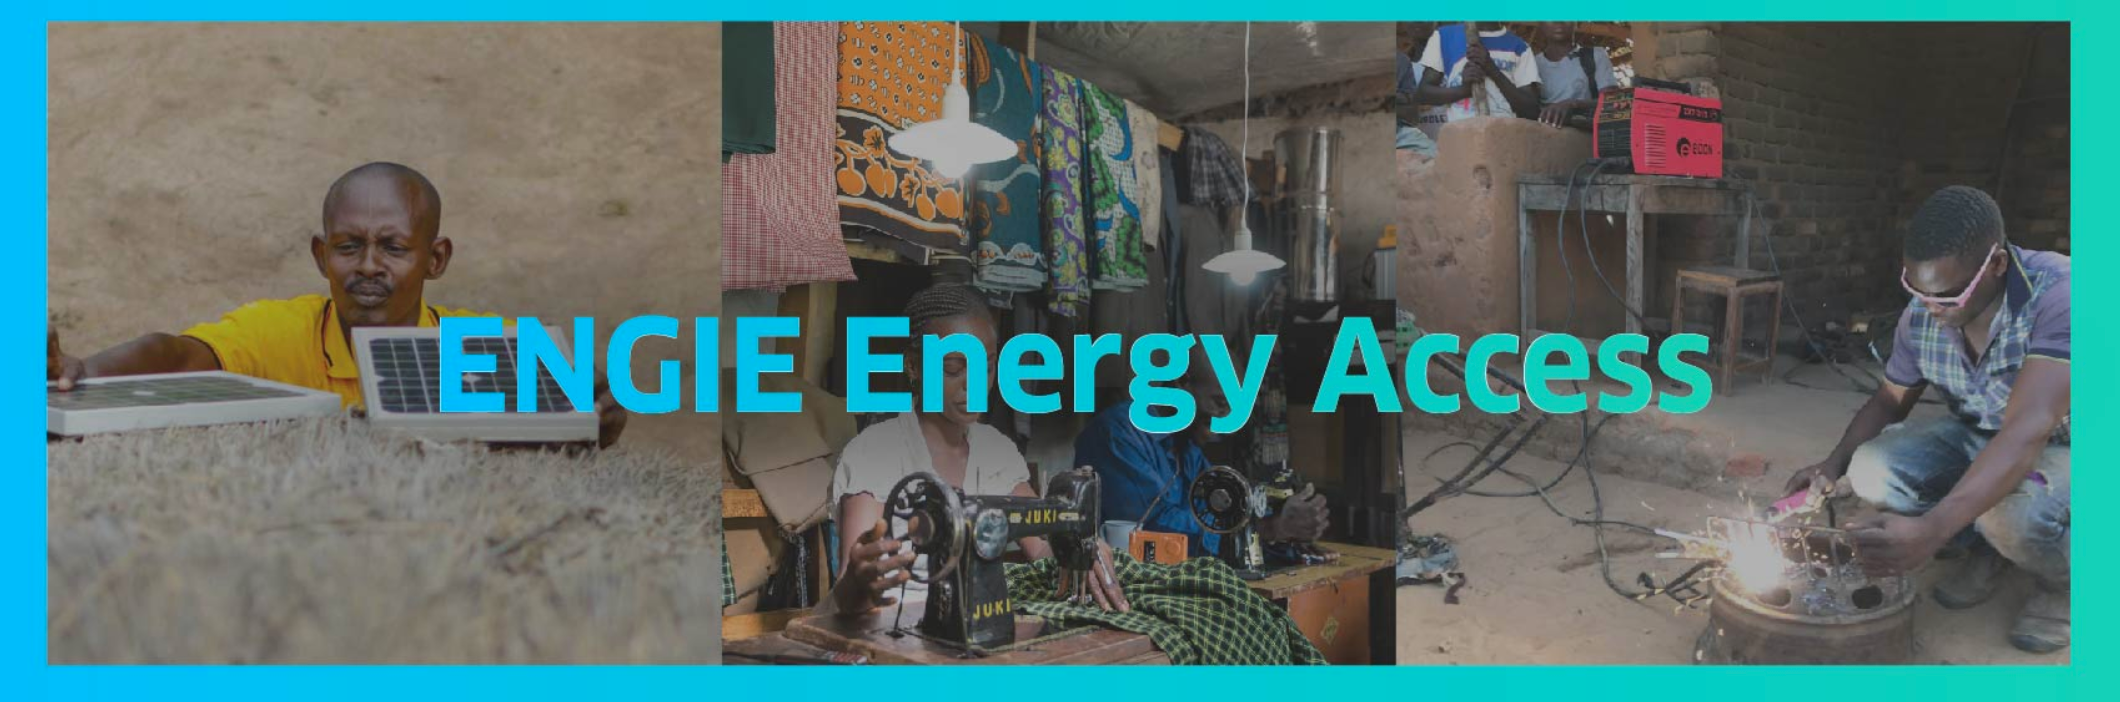 ENGIE Energy Access permet à 6,5 millions d’Africains d’accéder à une énergie propre grâce à l’intégration intelligente de mini-réseaux et de la nouvelle marque Solar Home System